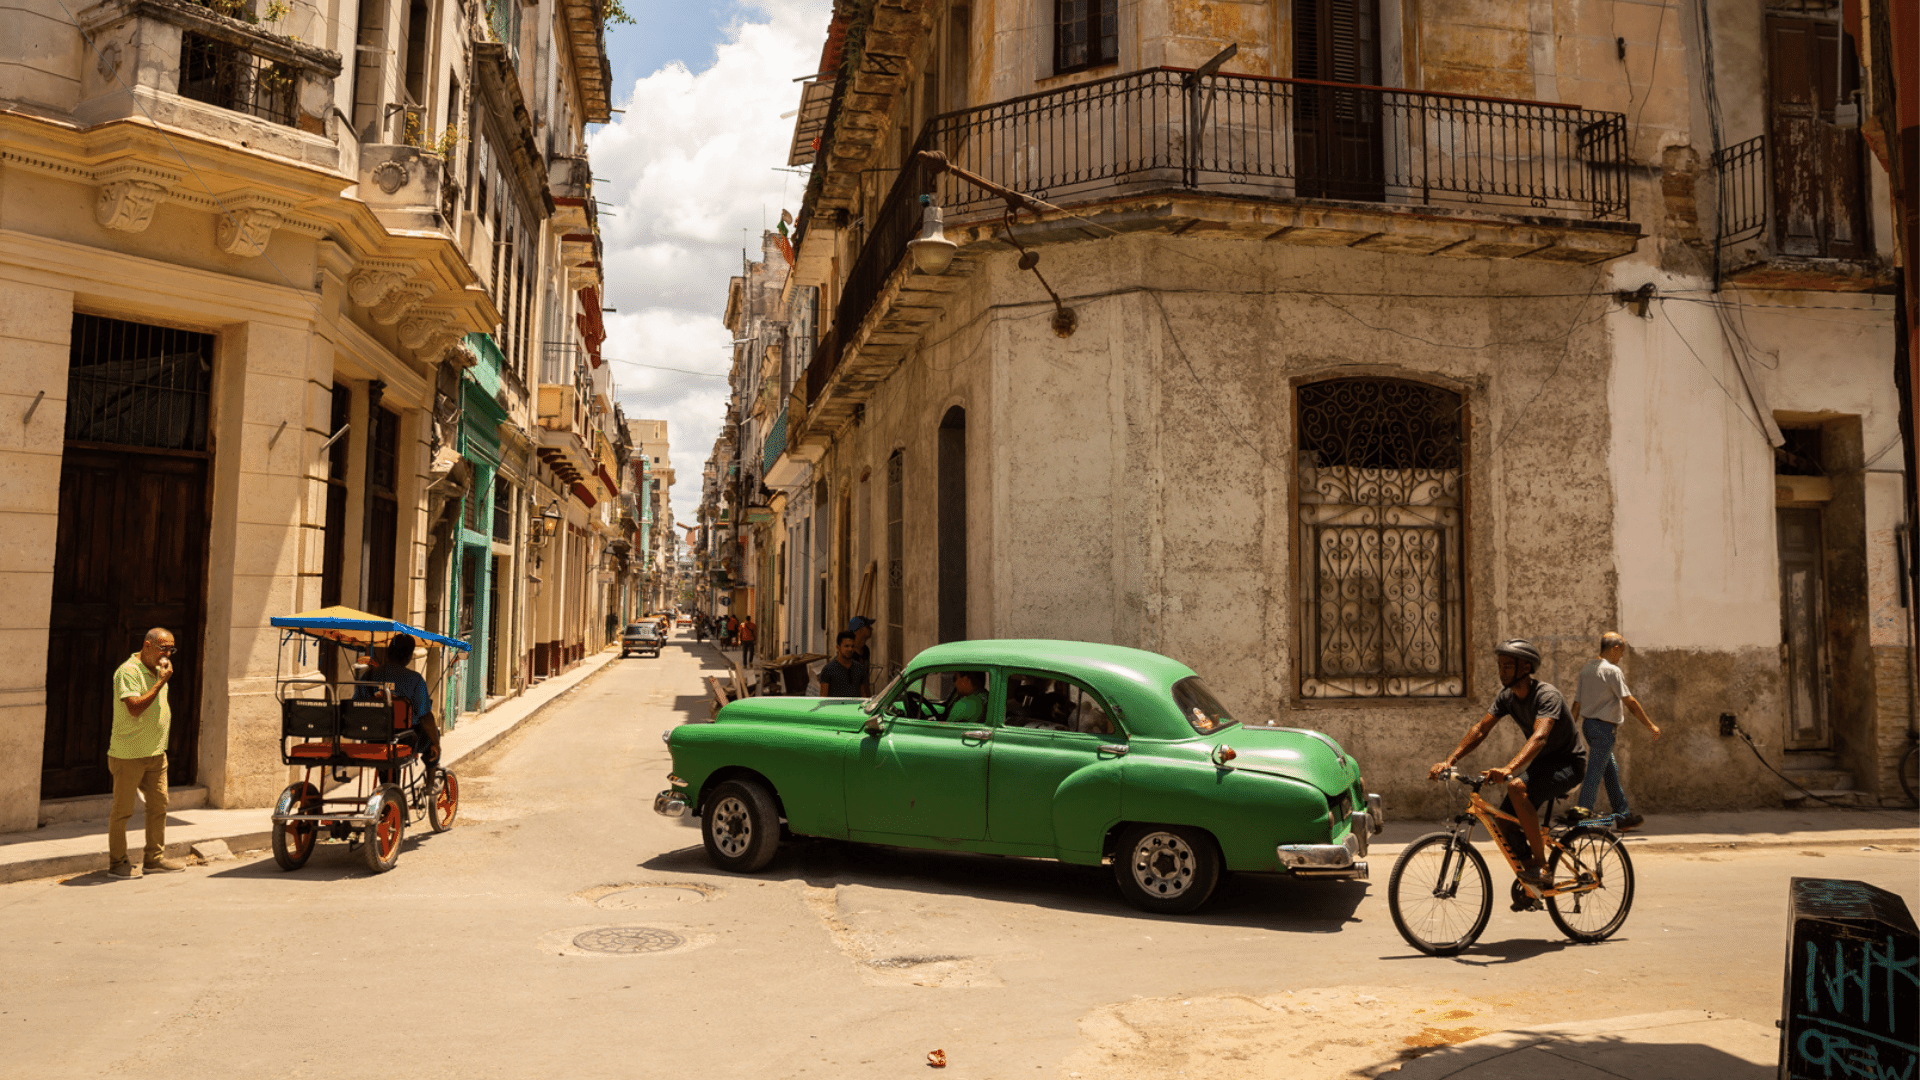 Back street in Havana